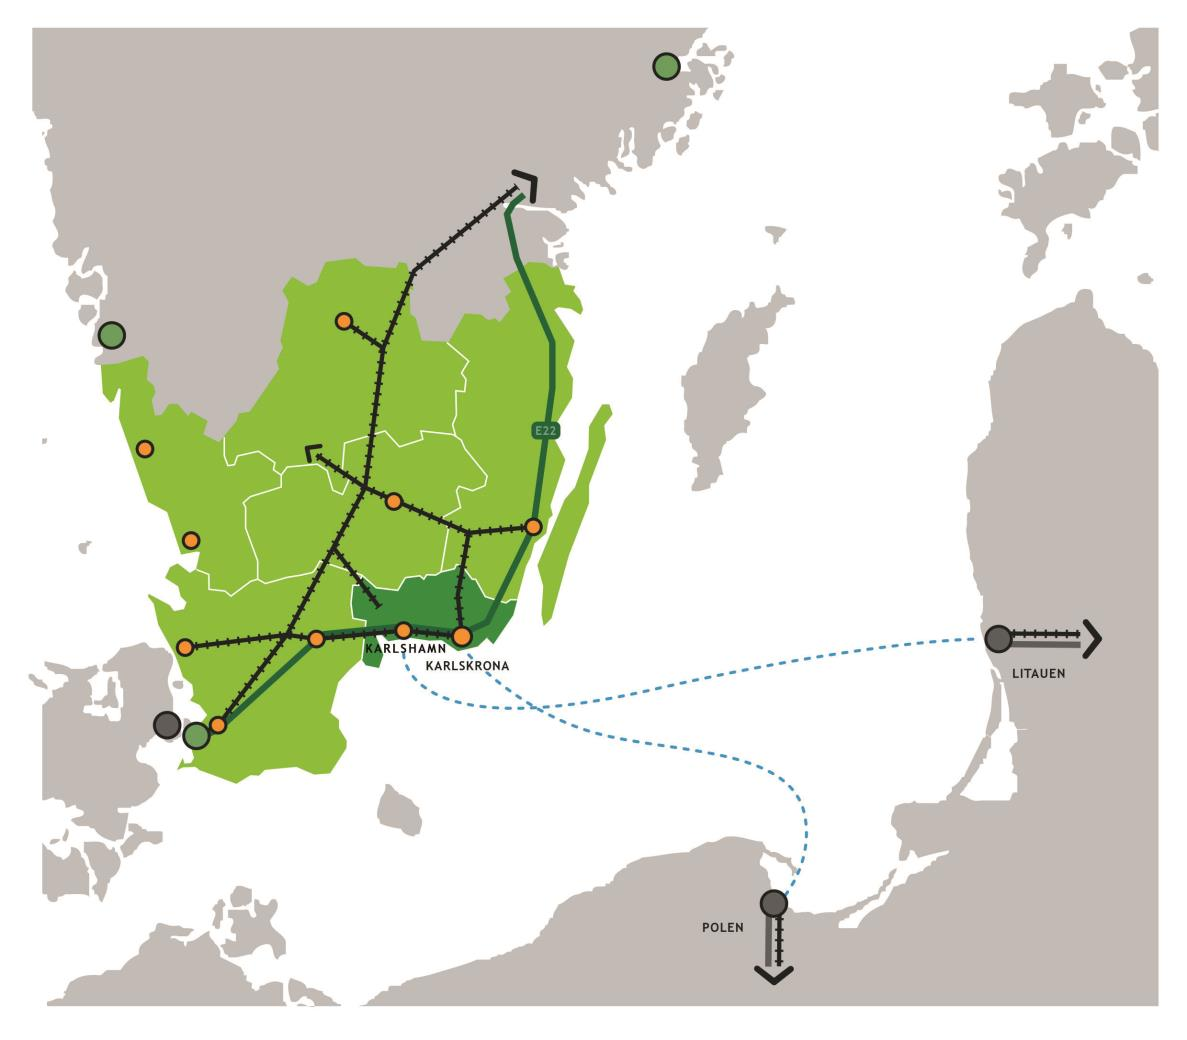 Blekinges infrastruktur med koppling till omvärlden Två och ½ järnvägar; Blekinge kustbana, trimning i ny plan Sydostlänken prövas i ny plan Kust till kustbanan E22; Lösen-Jämjö byggstart 2020